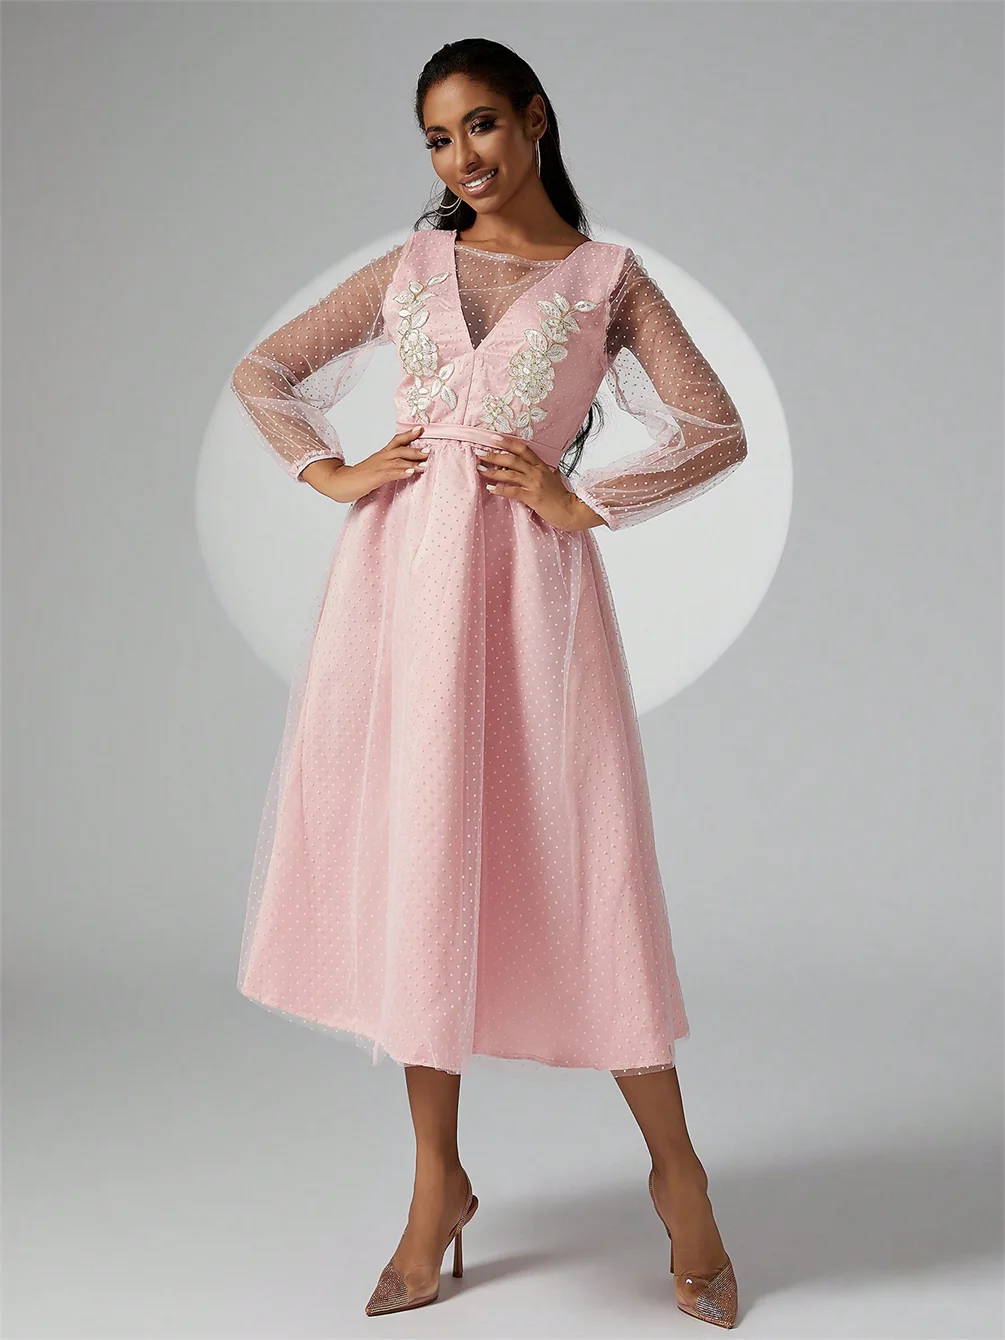 Элегантное женское вечернее платье Нежно-розового цвета Женское платье из фатина с длинным рукавом Роскошное платье Праздничное платье